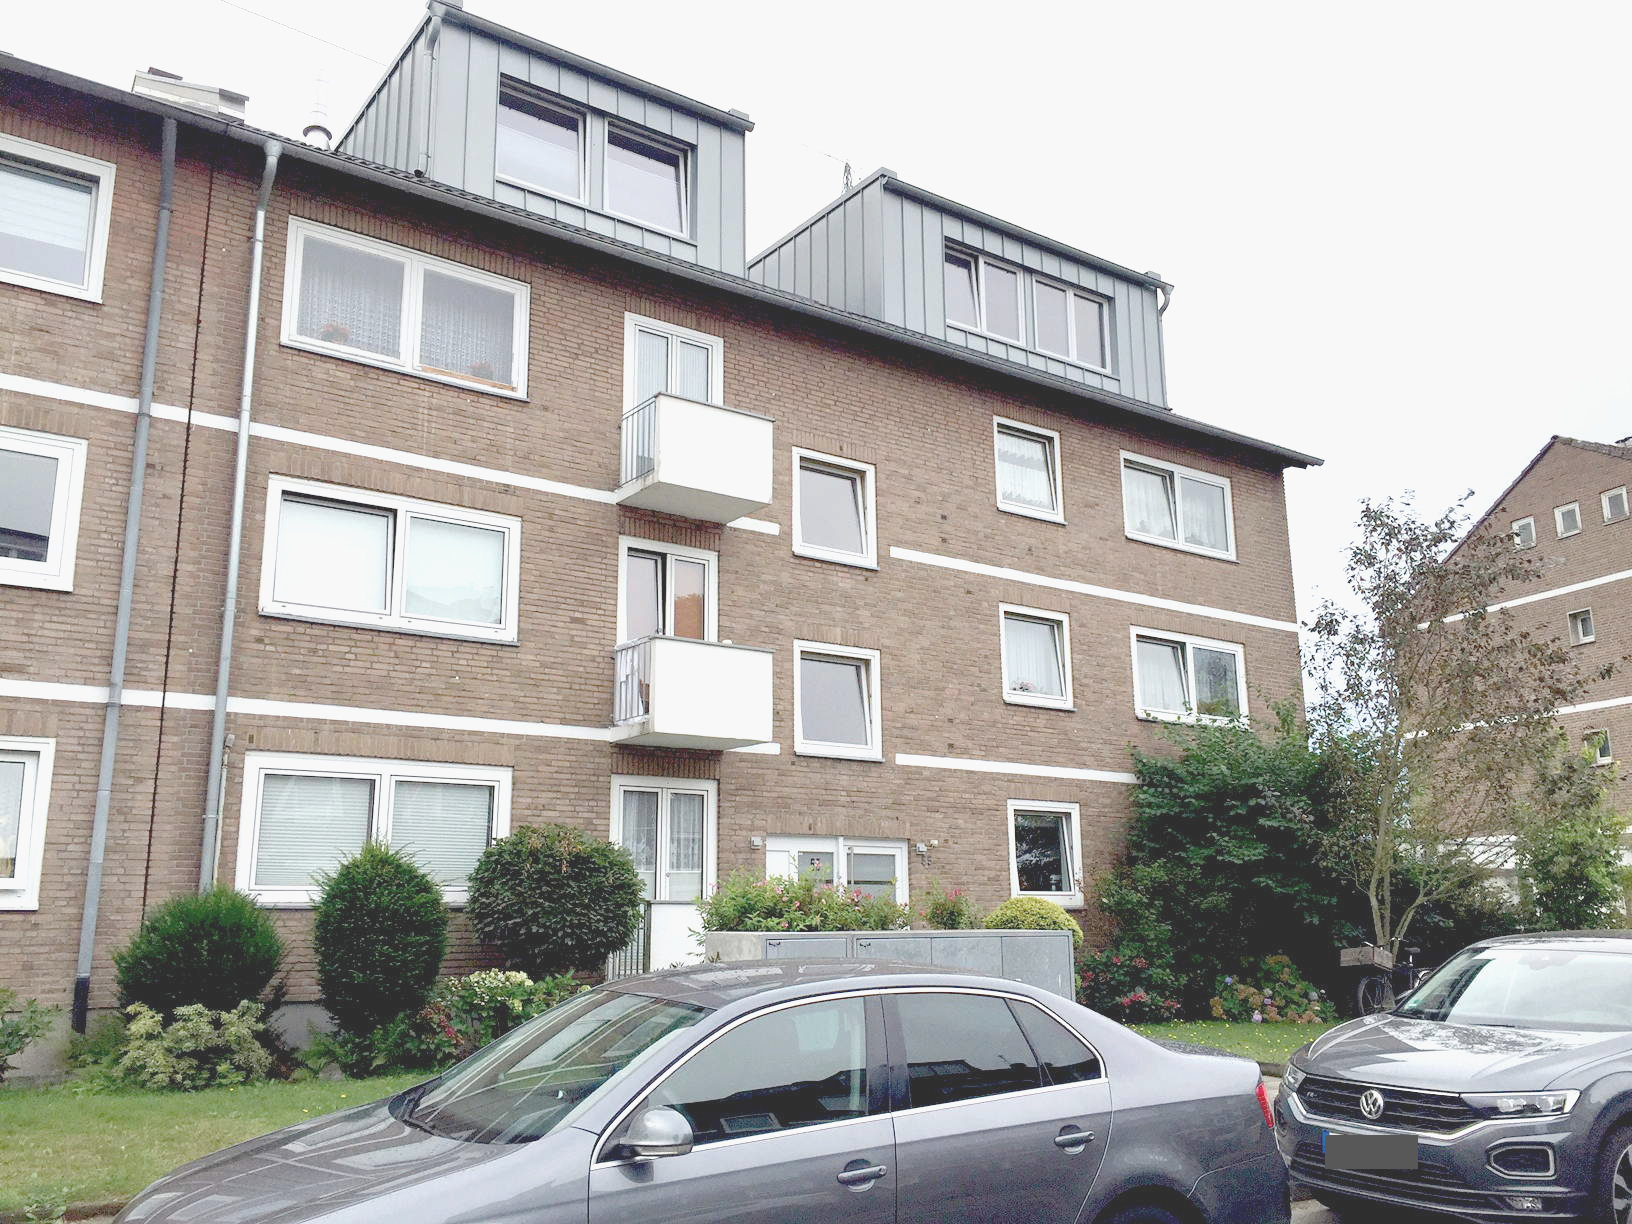 Vermietet! Sanierte und moderne 3-Zimmerwohnung mit 2 Balkonen in Düsseldorf-Wersten